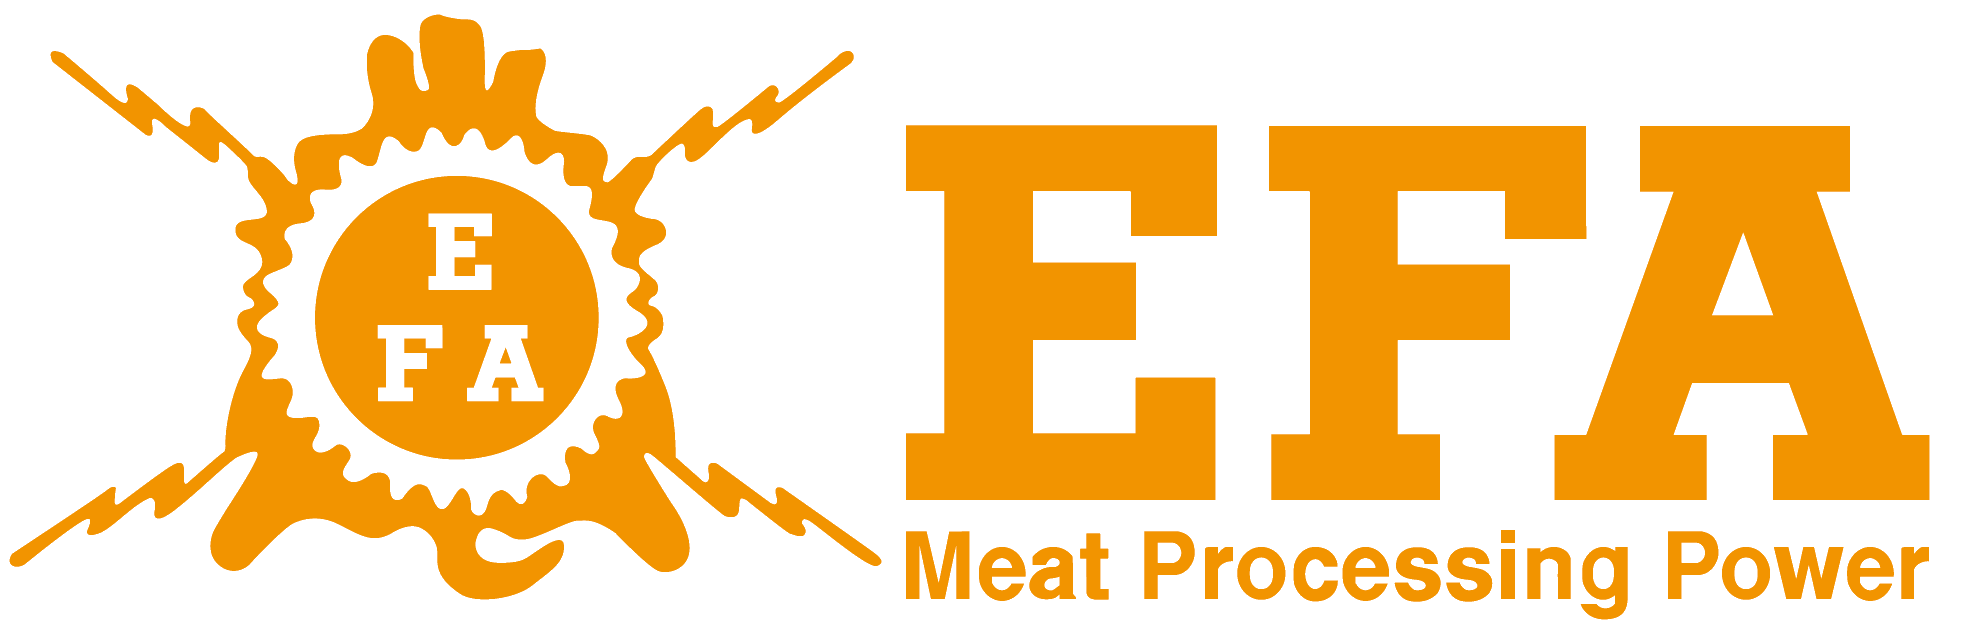 Efa Logo